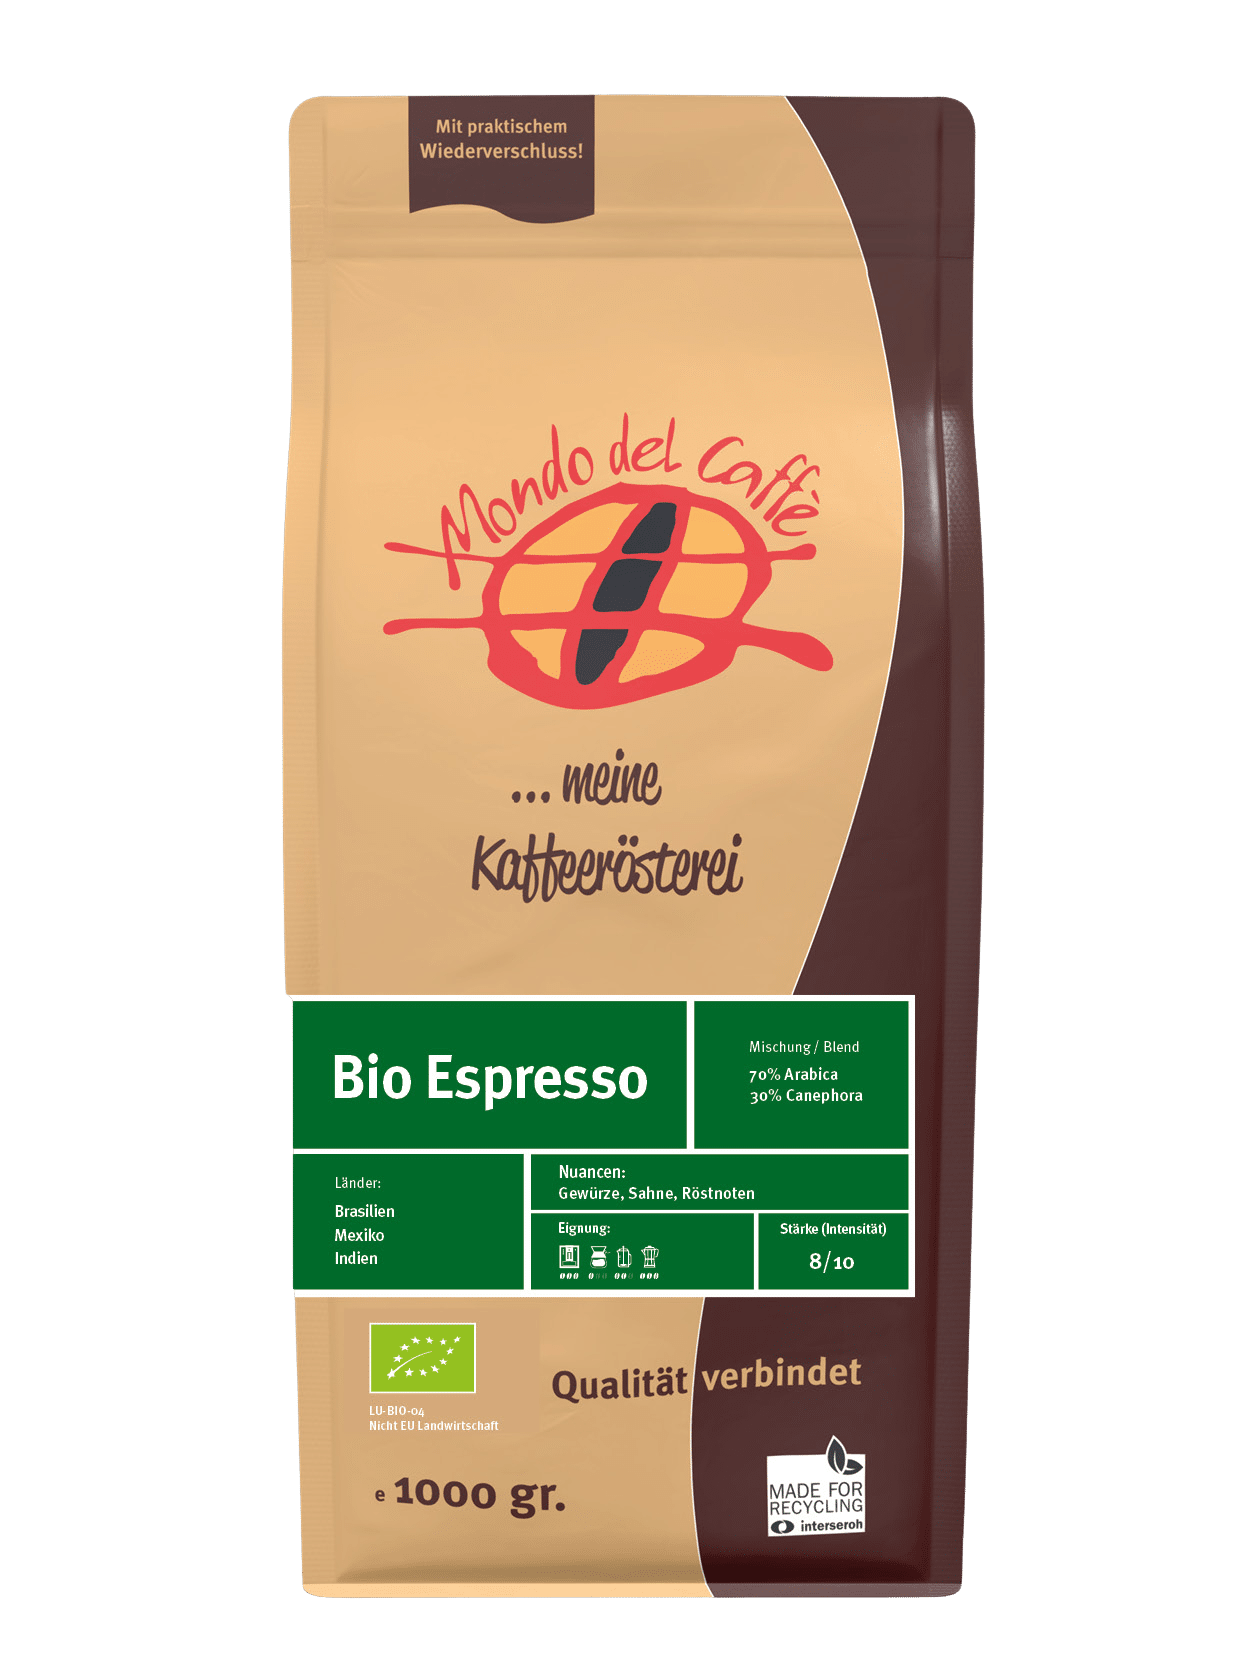 Espresso biologique 70/30 top espresso certifié biologique